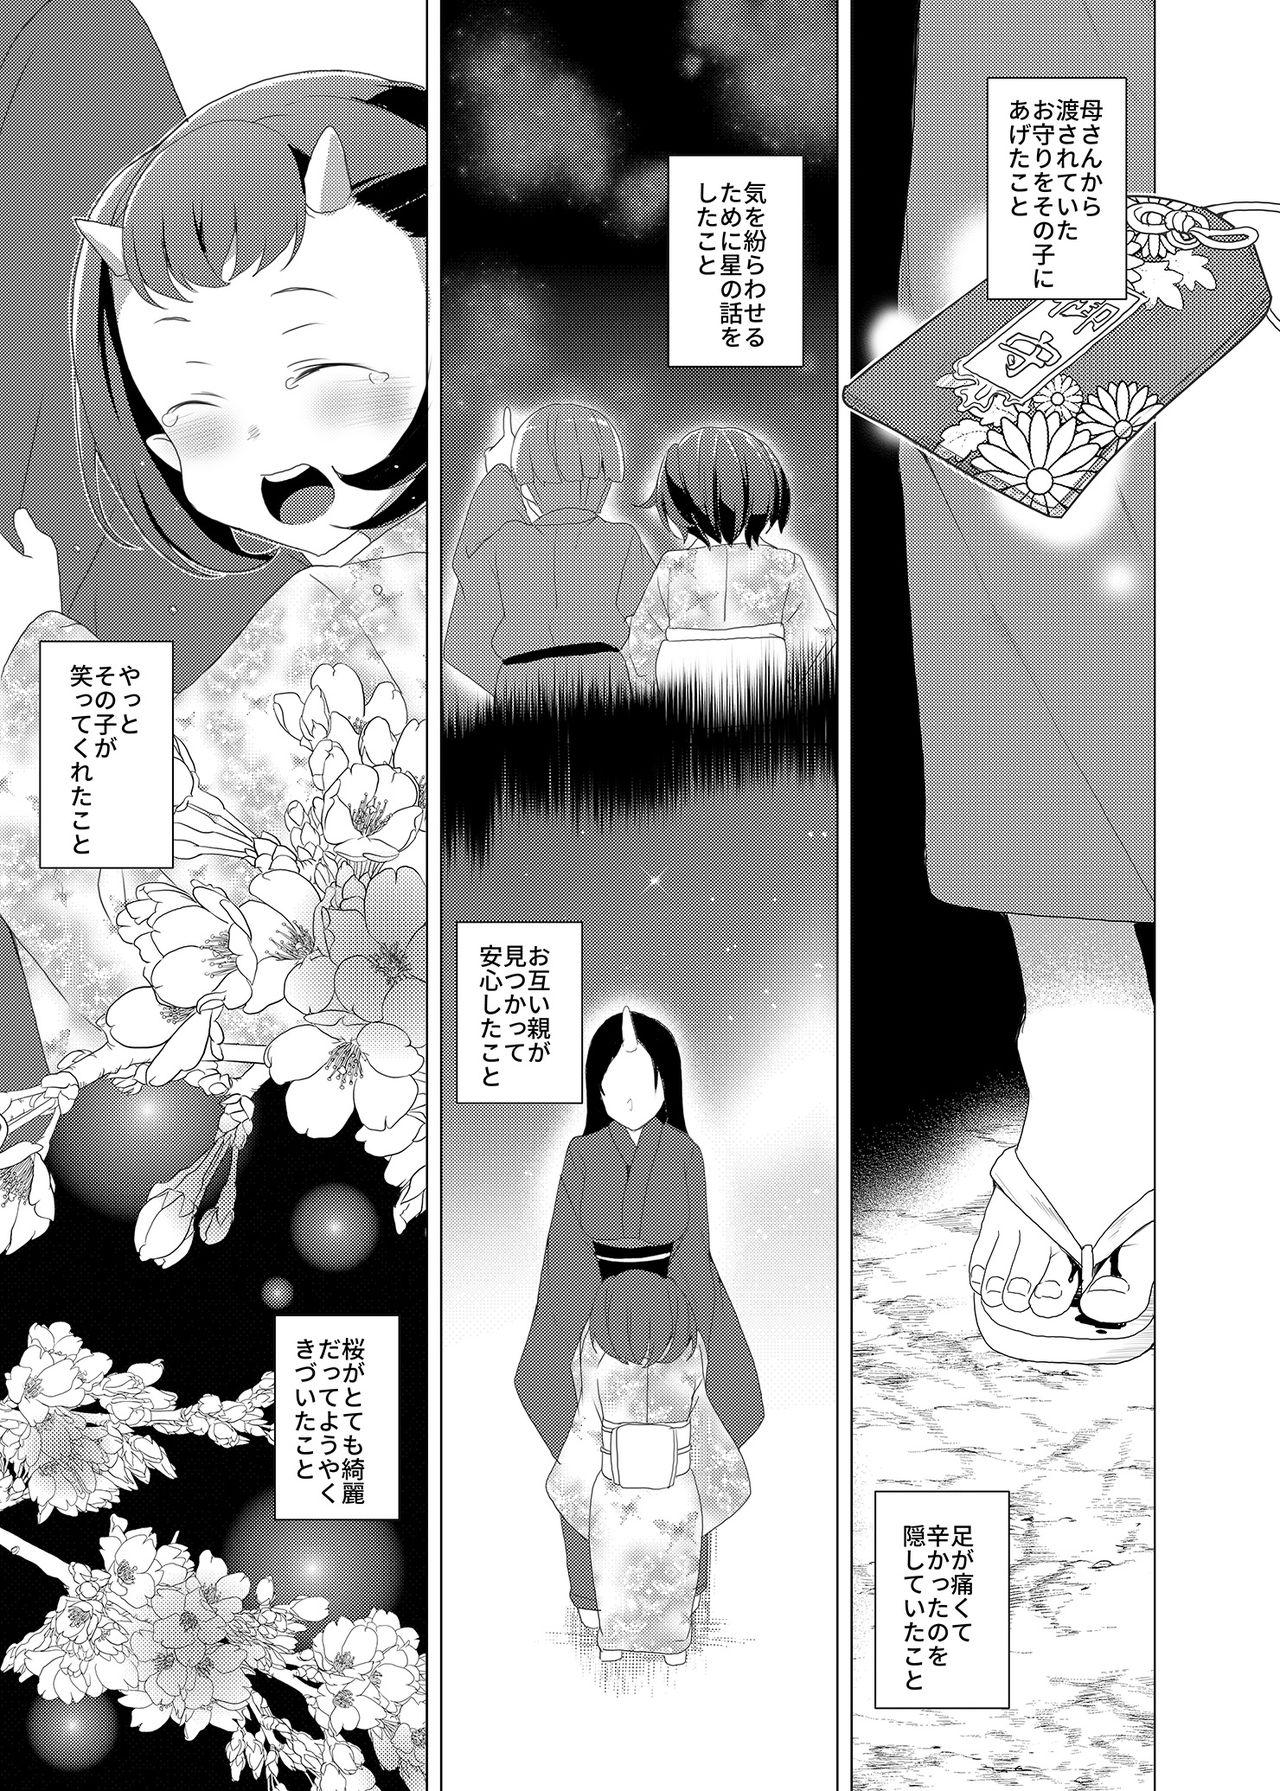 Slapping Boku to Kimi ga Sugosu Haru - Original Trimmed - Page 4